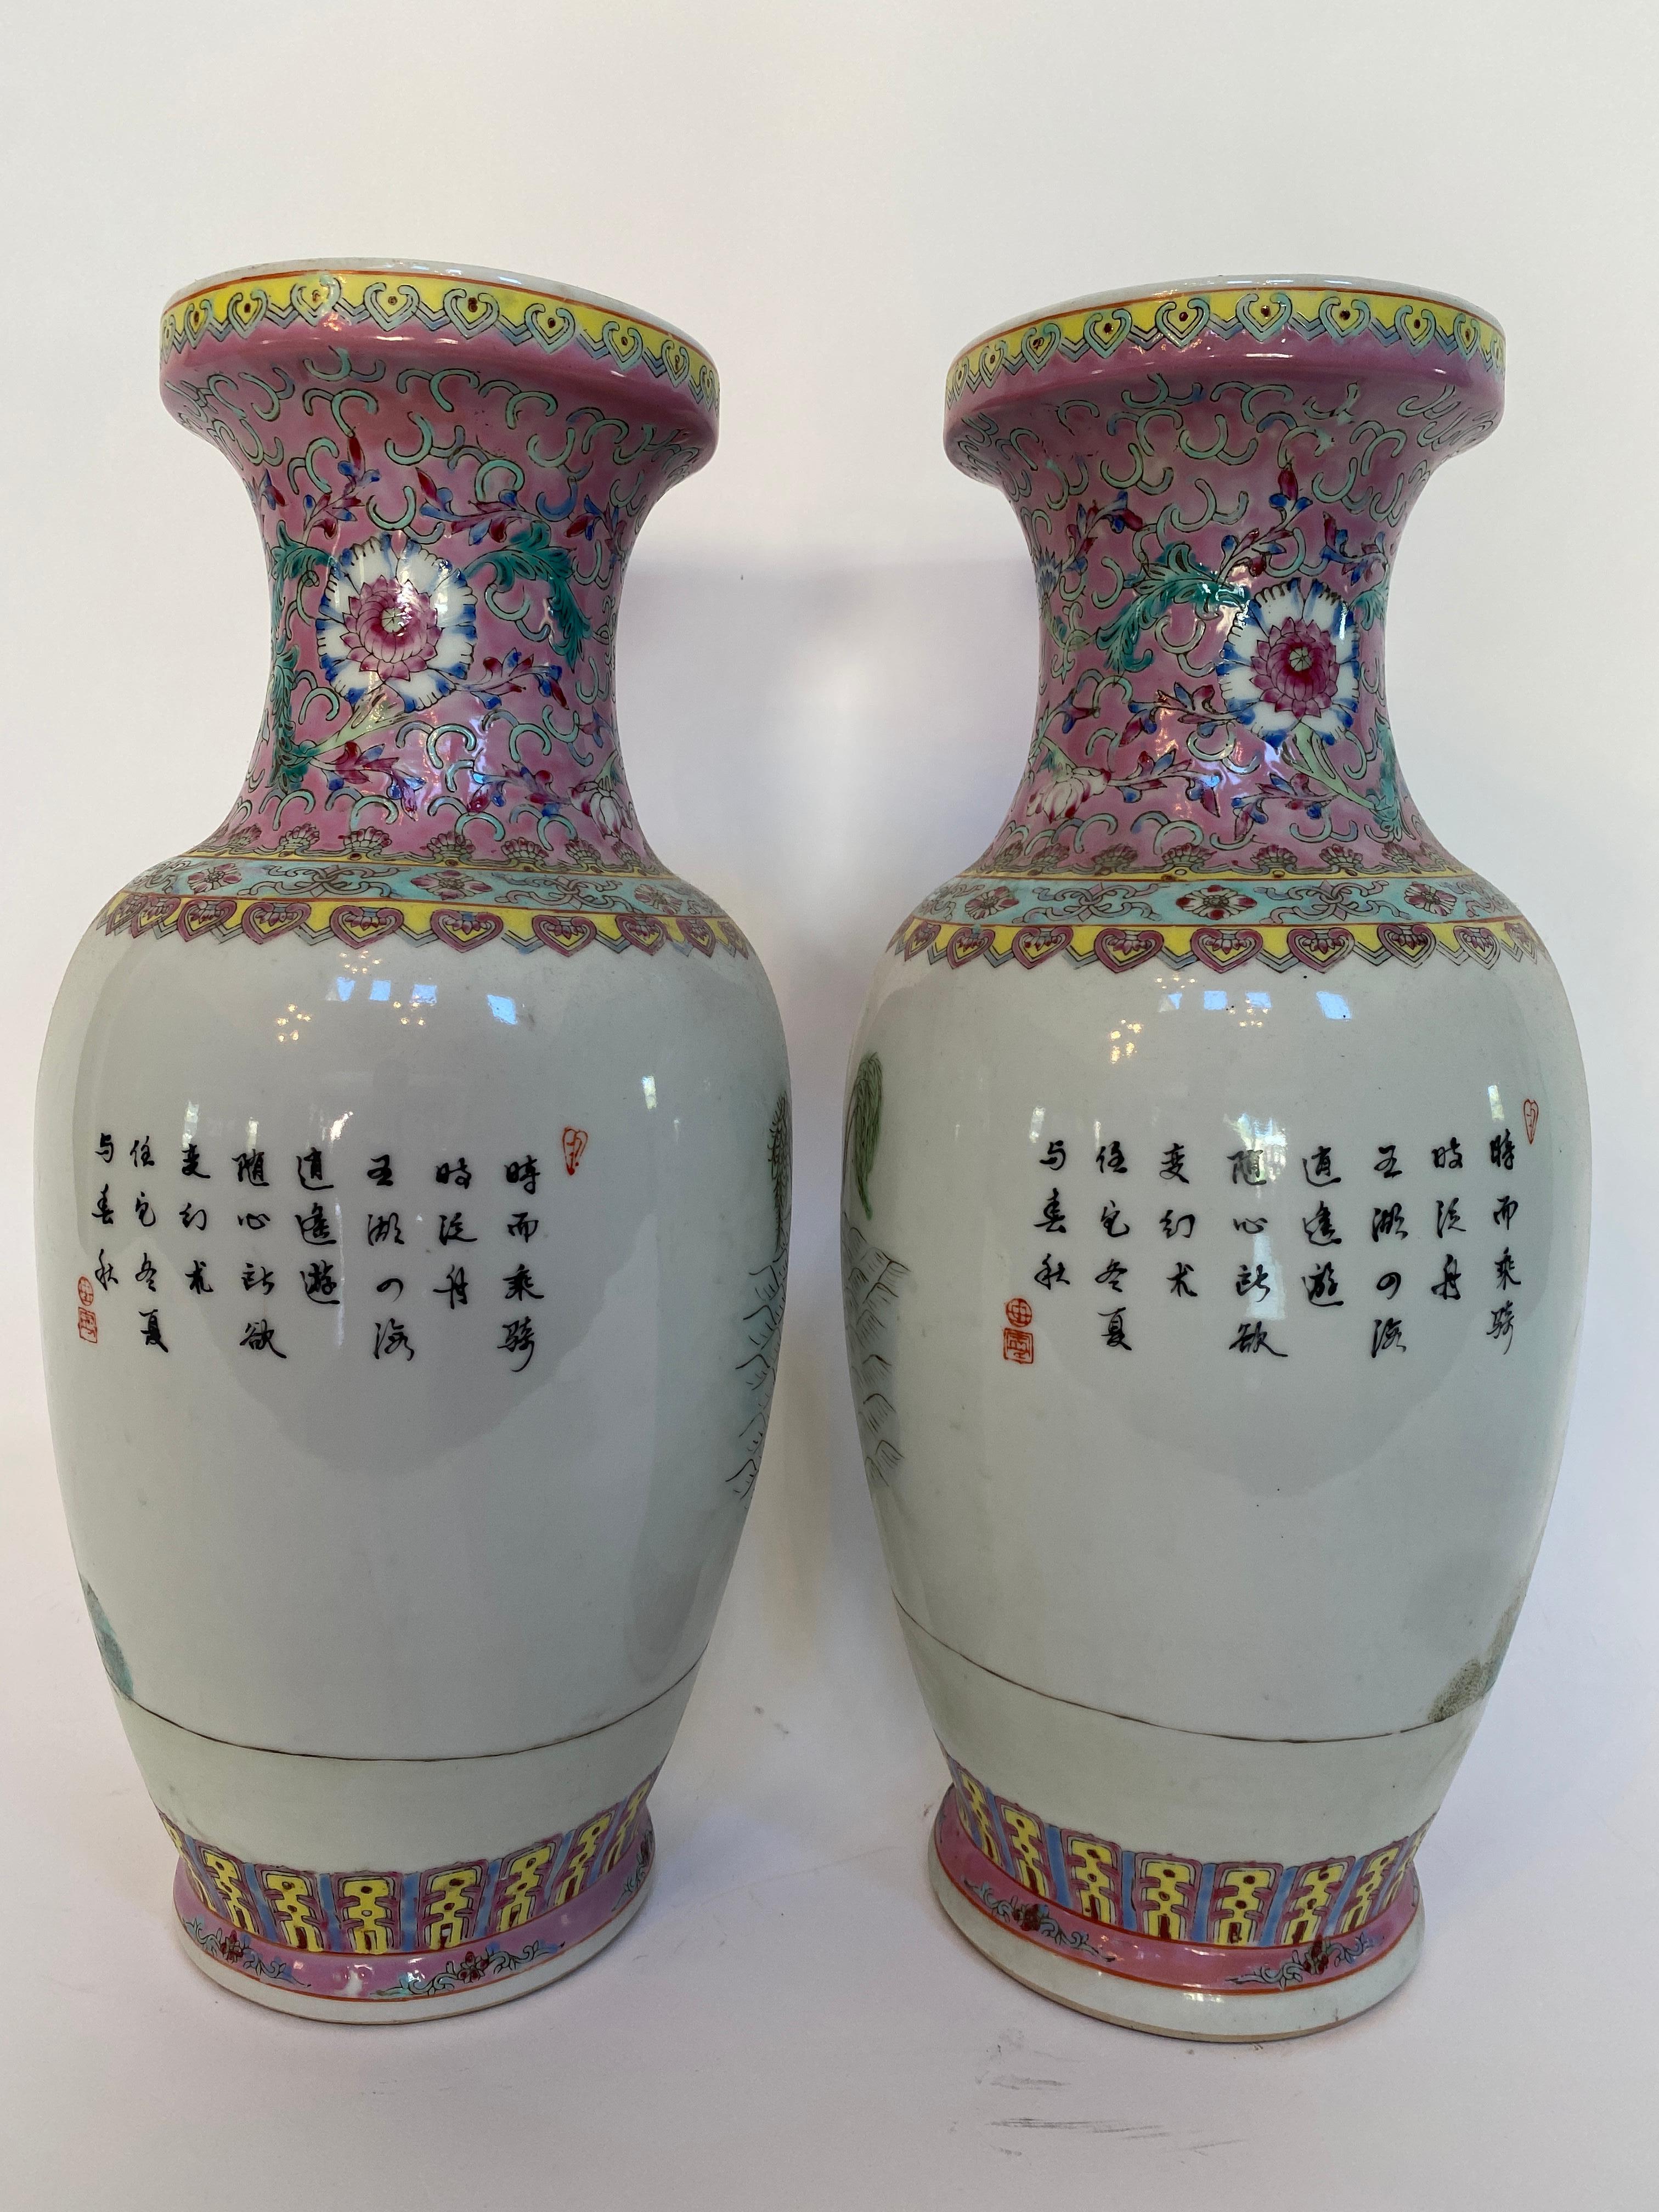 Paire de vases en porcelaine chinoise du XXe siècle peints à la main. L'un d'entre eux présente une courte ligne de poils à l'intérieur, l'autre n'a pas de ligne de poils à l'extérieur, voir plus de photos. Mesures : Mesures : 8.5